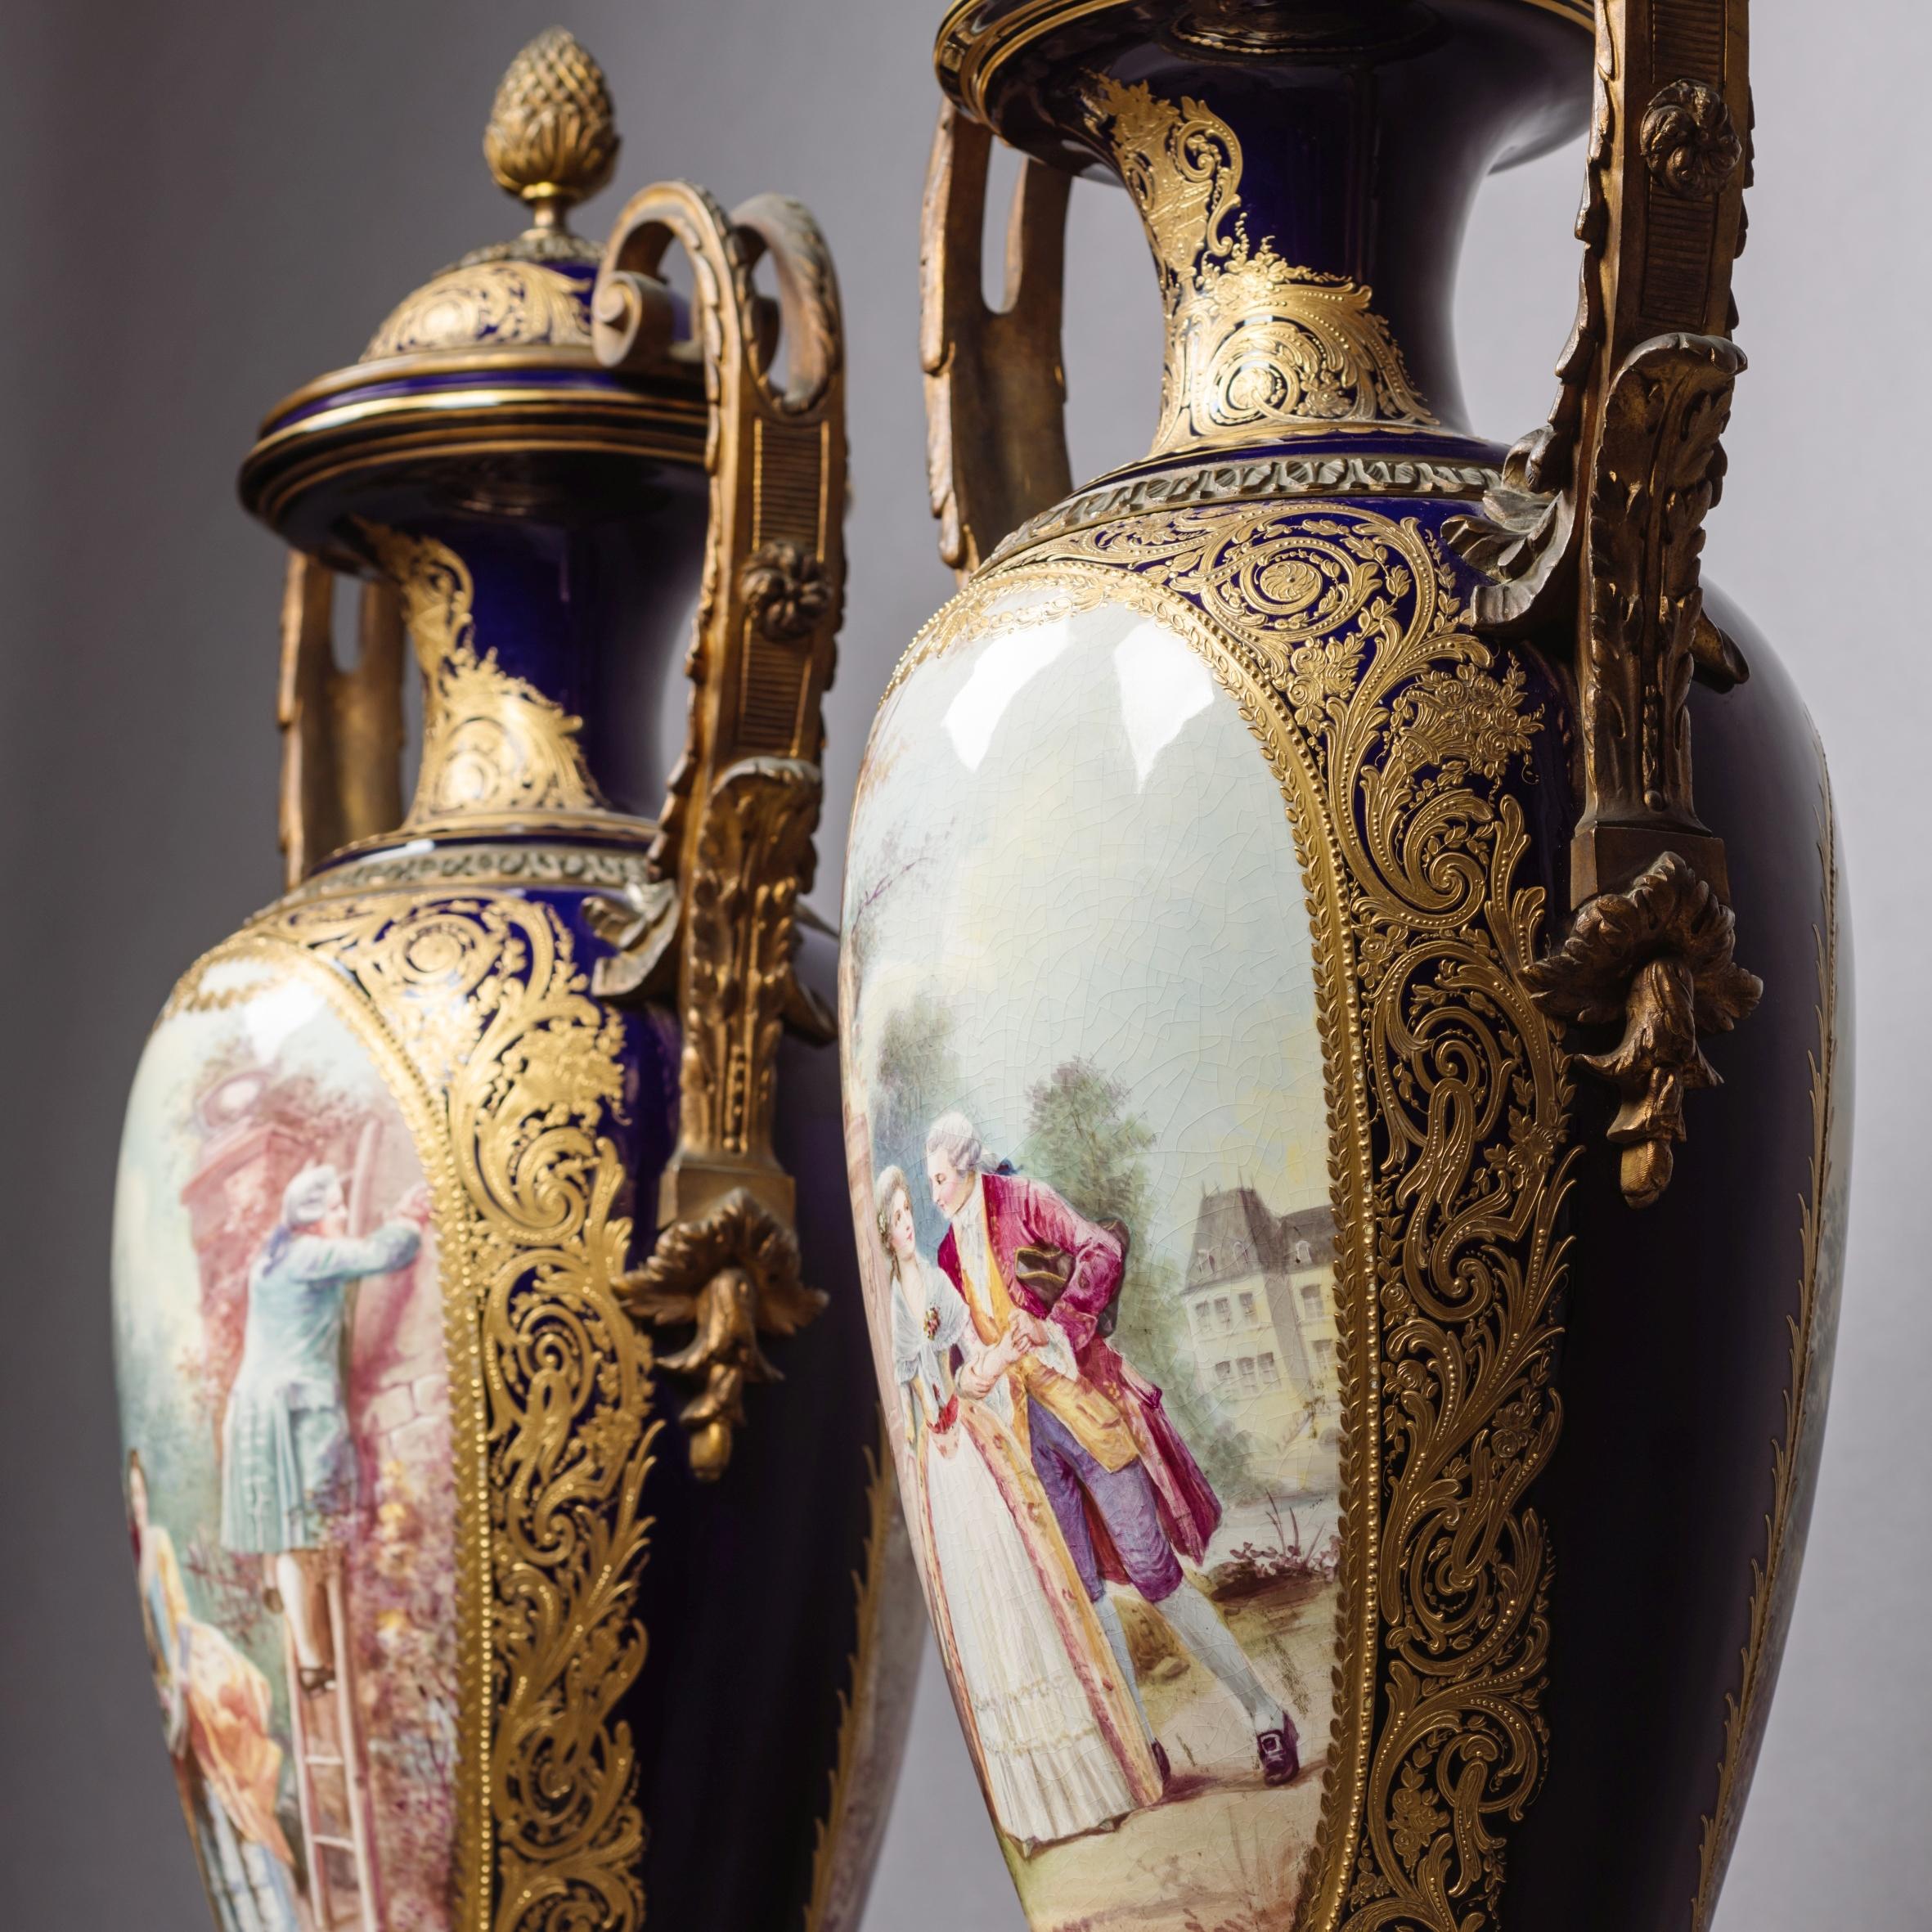 Ein feines Paar kobaltblauer Porzellanvasen und -deckel im Stil von Sèvres, in Goldbronze gefasst.

Jede Vase hat die Form einer Amphora mit gewölbten Deckeln, verschnörkelten Henkeln und quadratischen, einspringenden Sockeln aus vergoldeter